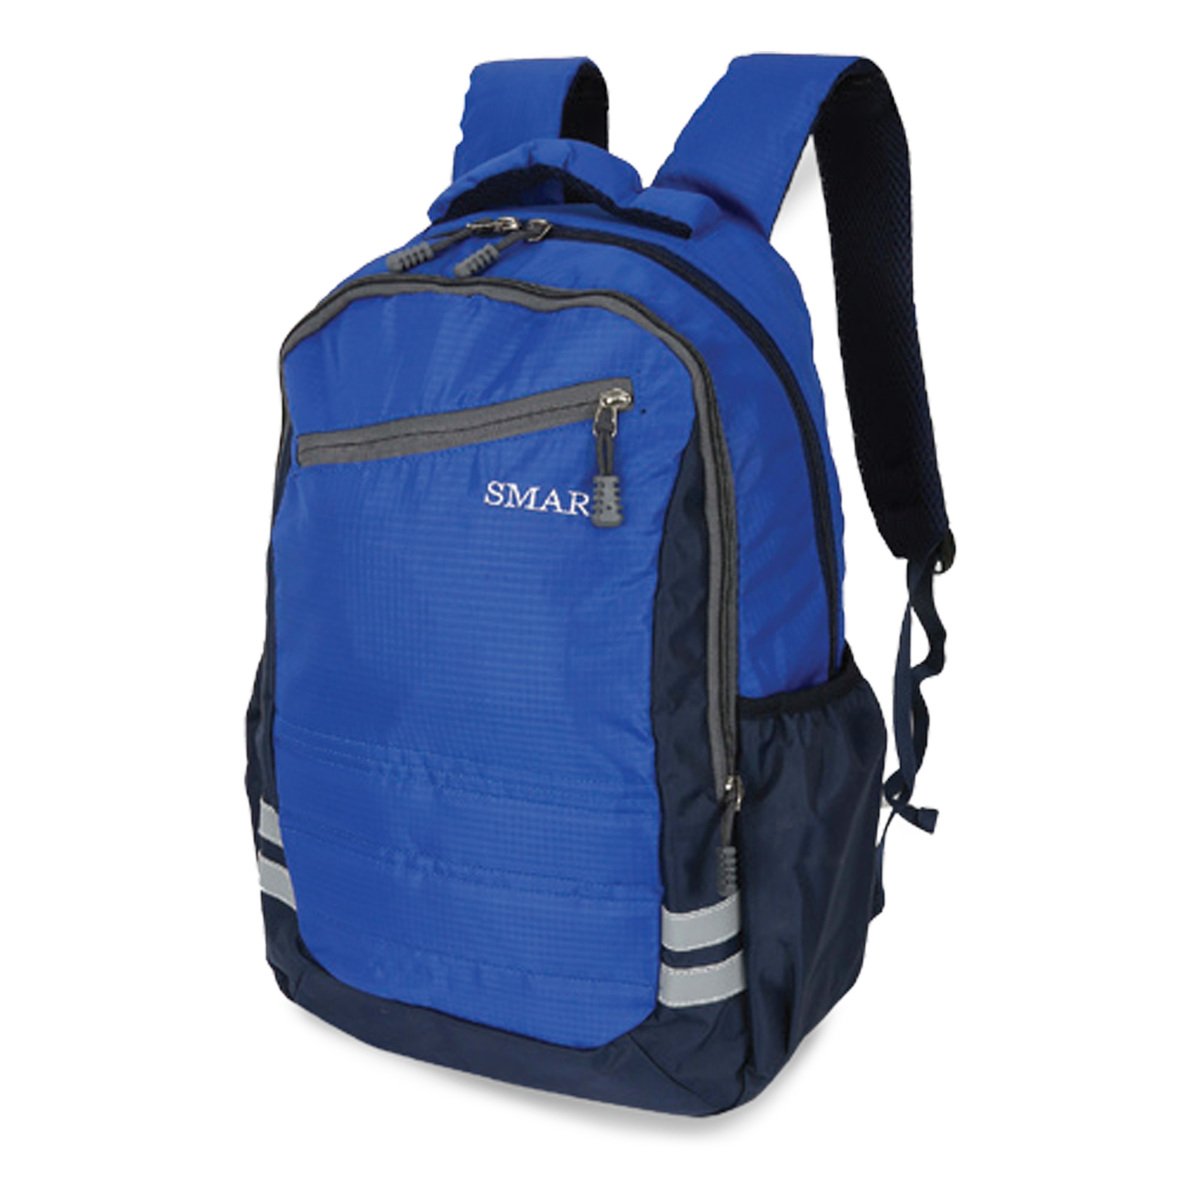 Smart Backpack 1783 19"